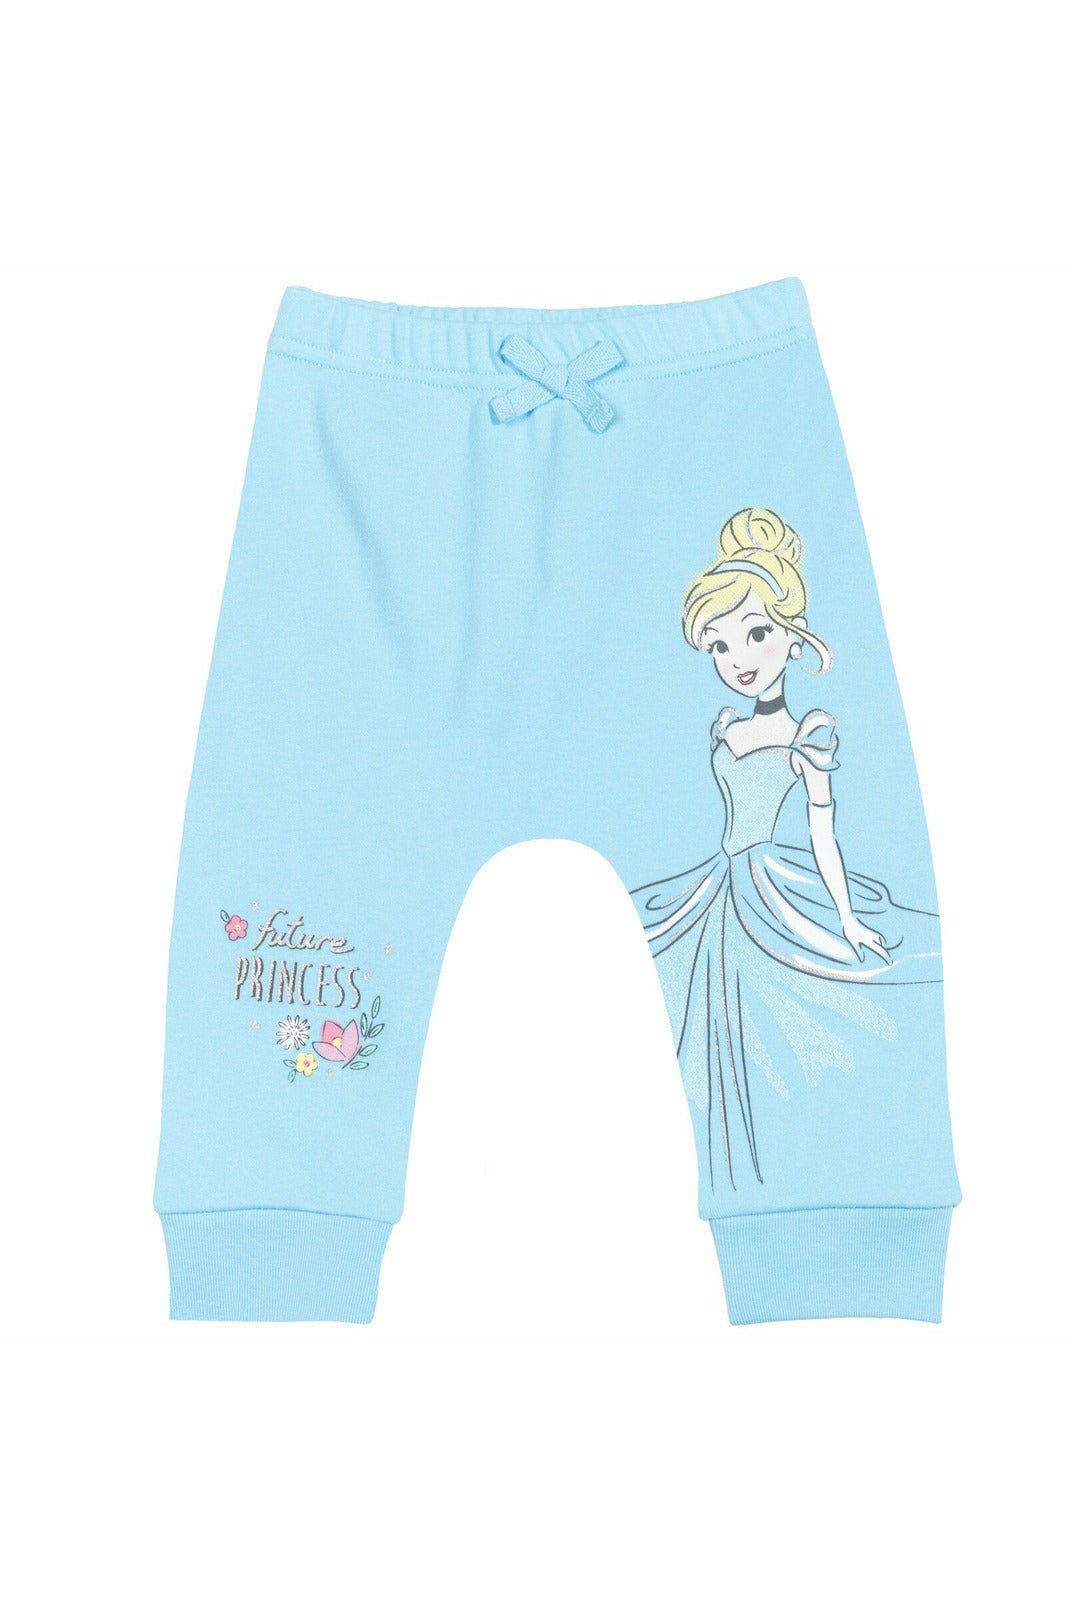 Disney Princesses 4 Pack Pants - imagikids